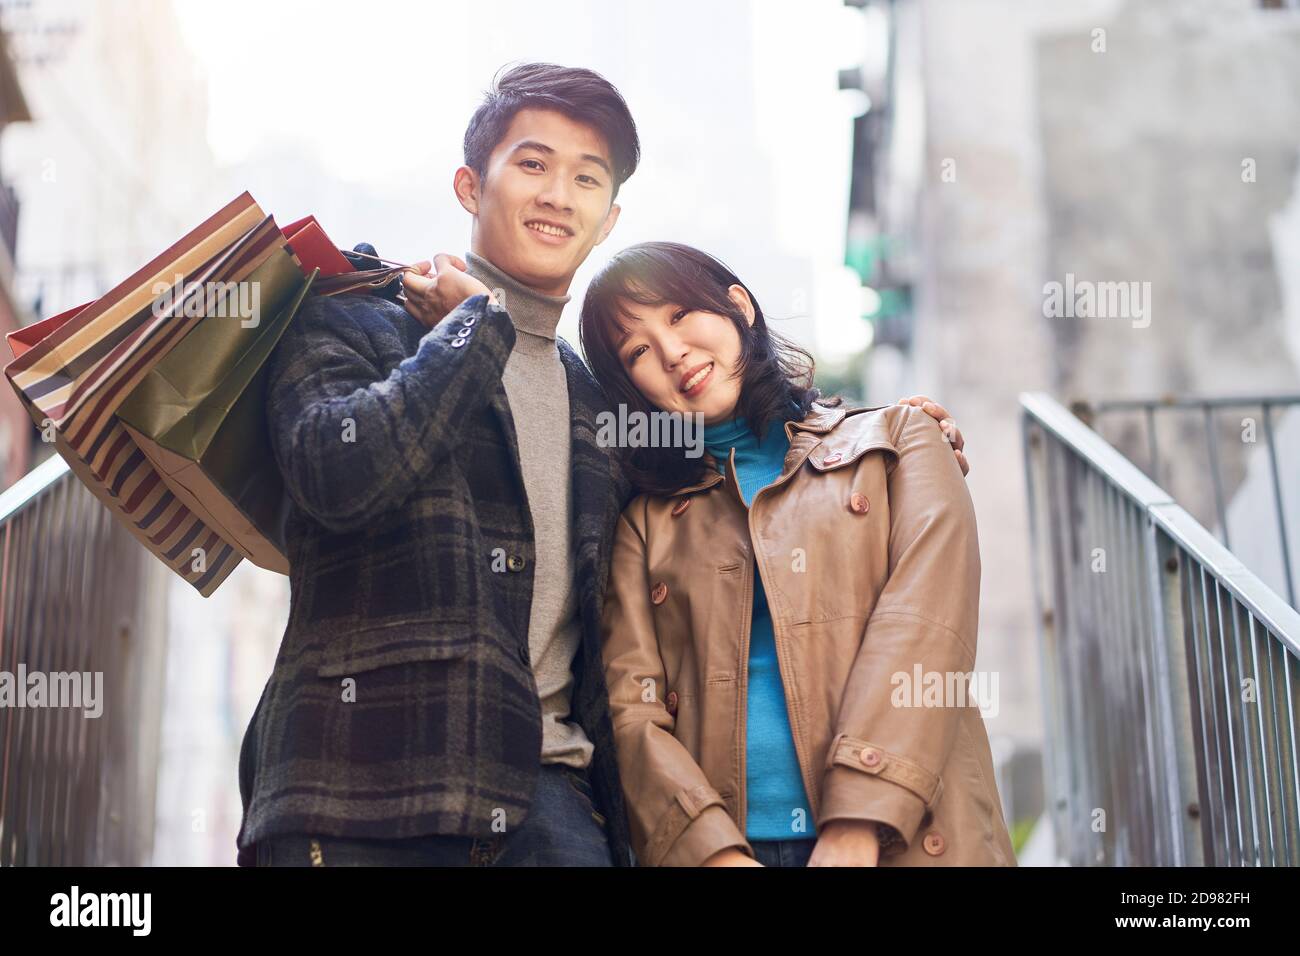 Außenportrait eines glücklichen jungen asiatischen Pärchen, das von einem Einkaufsbummel zurückkehrt und lächelnd auf die Kamera schaut Stockfoto